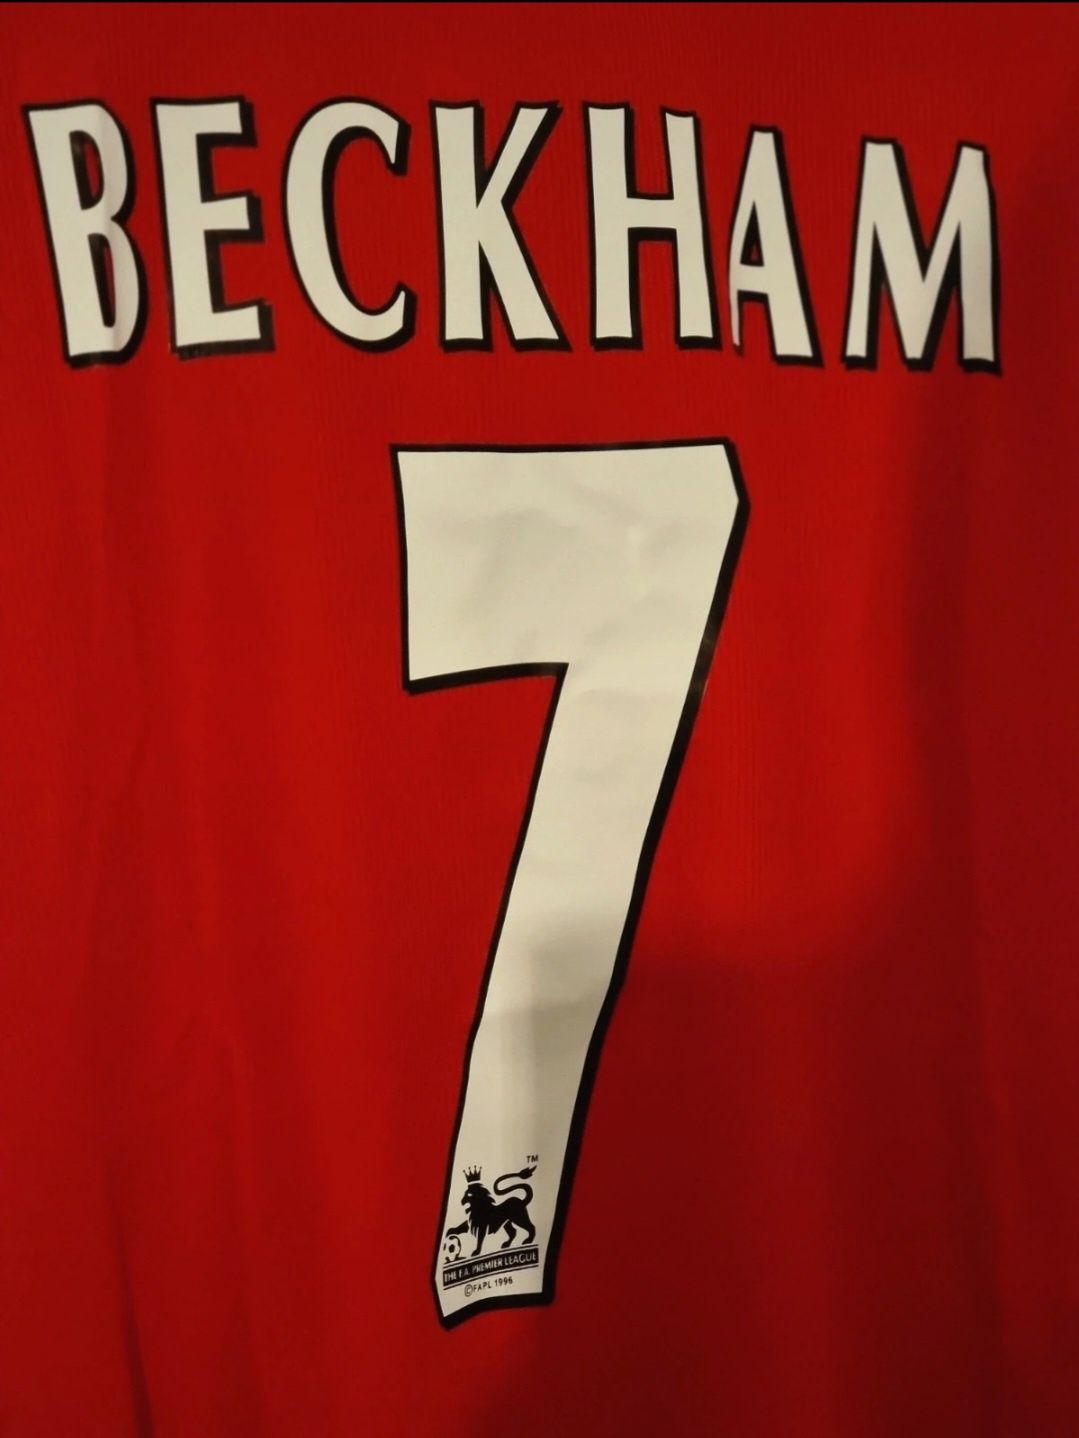 Camisola Manchester United Beckham Umbro 98 99